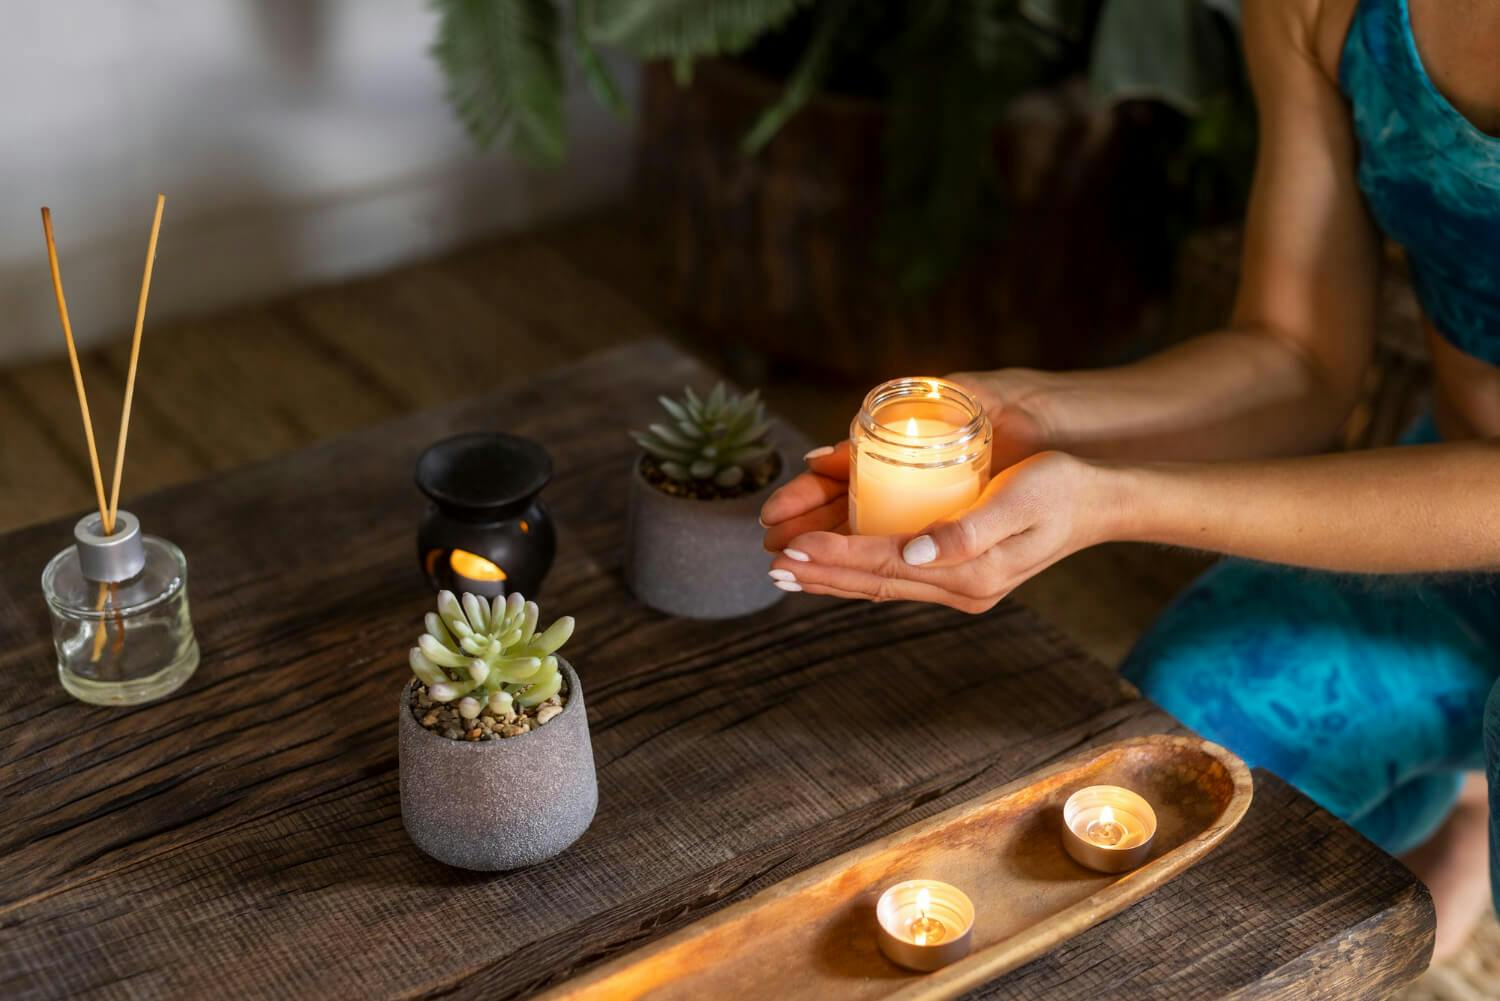 Una persona practicando mindfulness con una vela encendida, enfocándose en el presente para mejorar su autocontrol emocional y enfrentar la ansiedad.